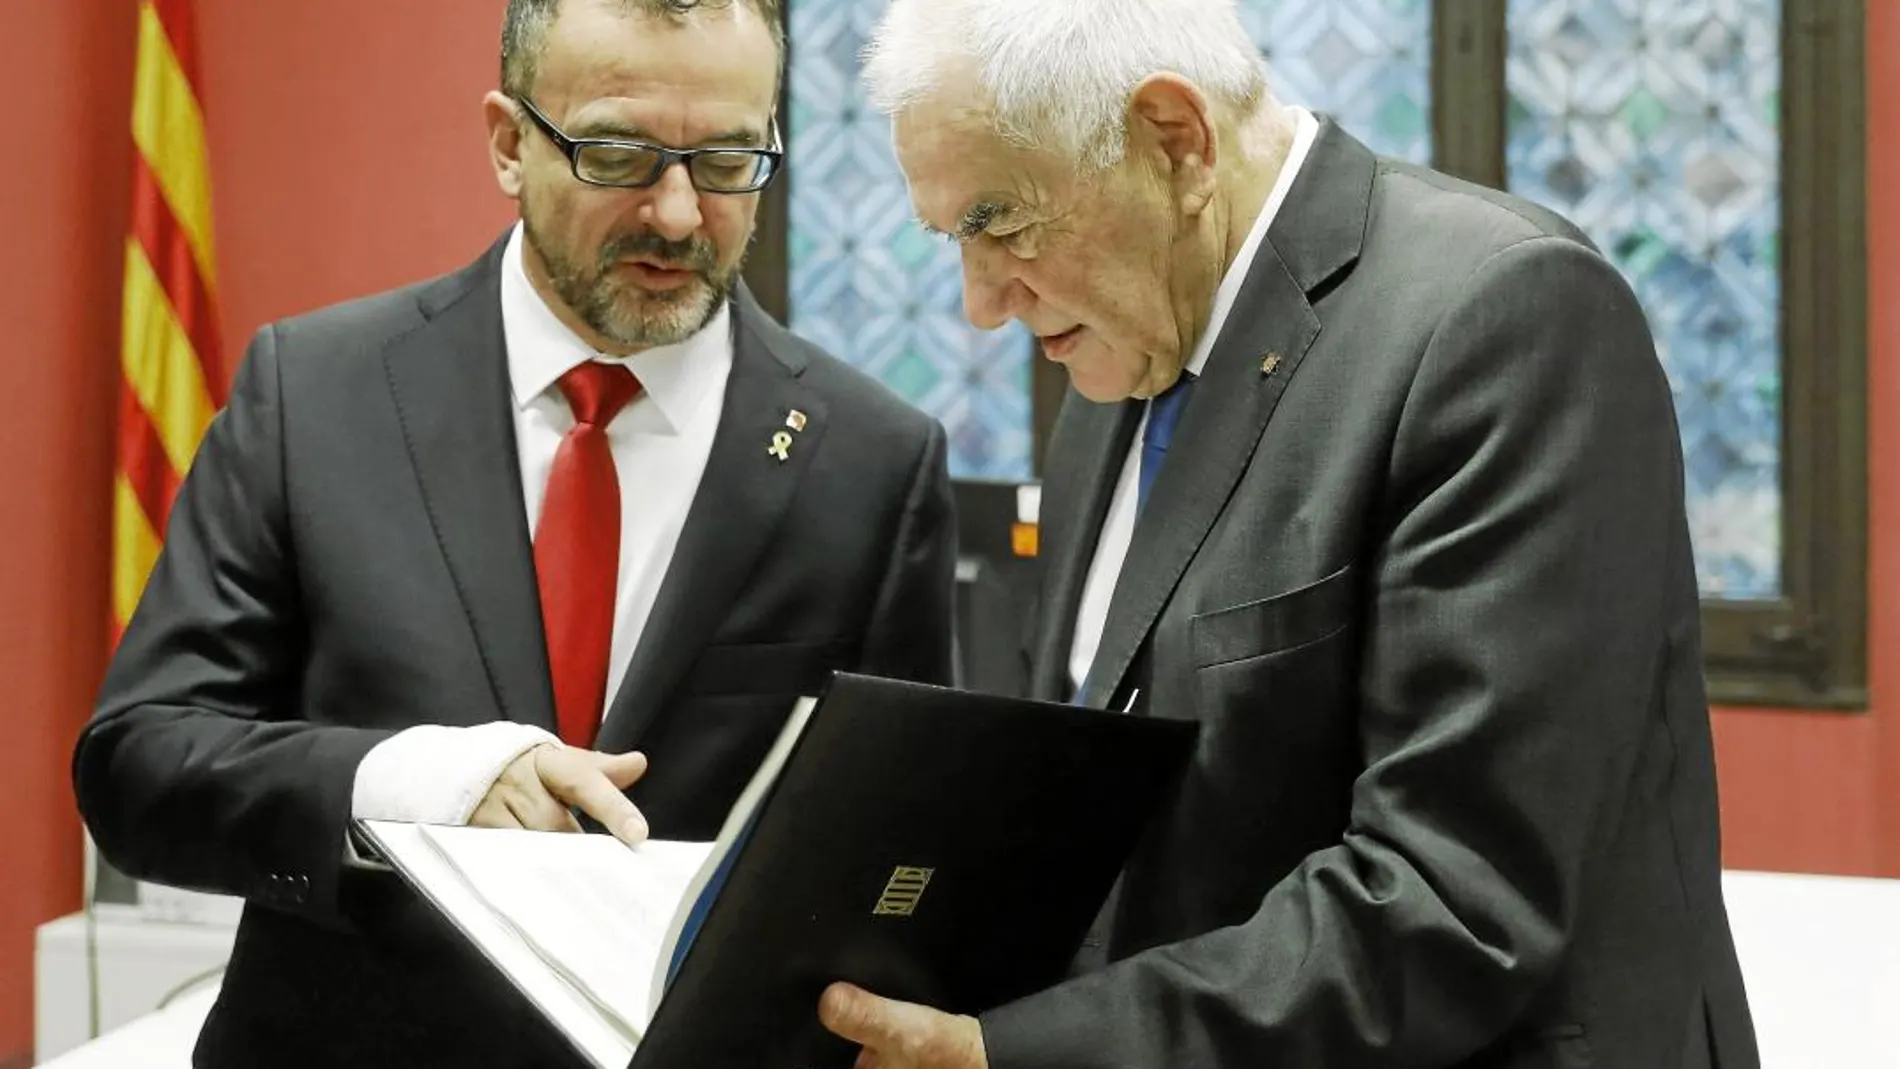 El consejero saliente, Ernest Maragall, con su sucesor, Alfred Bosch, ayer en el Palau de la Generalitat